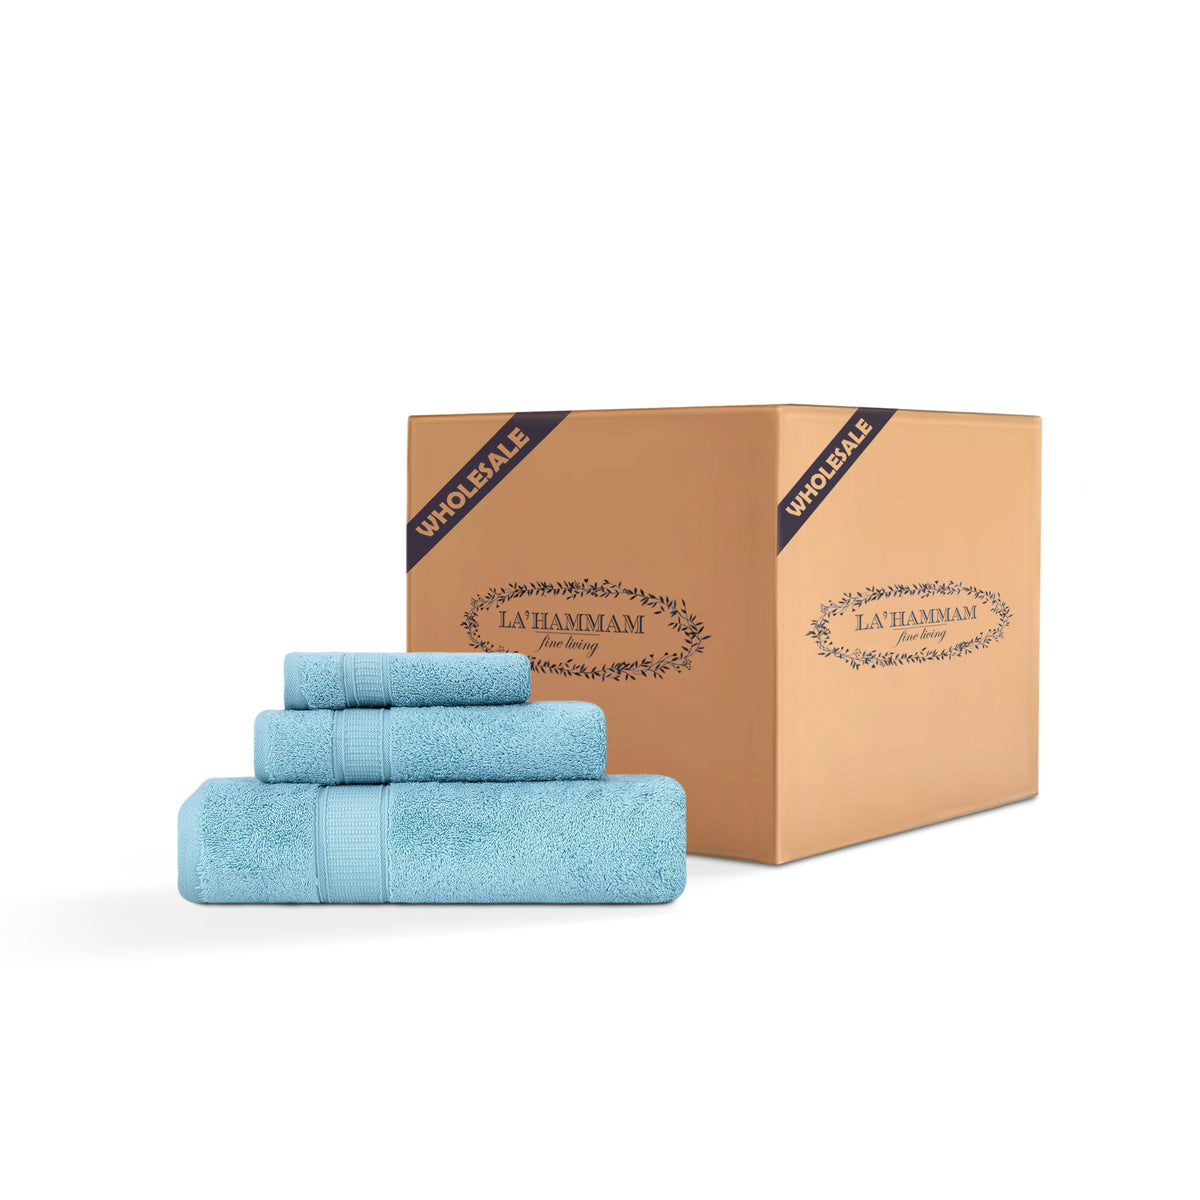 3 Piece Bath Towel Set - 16 Set Case Box